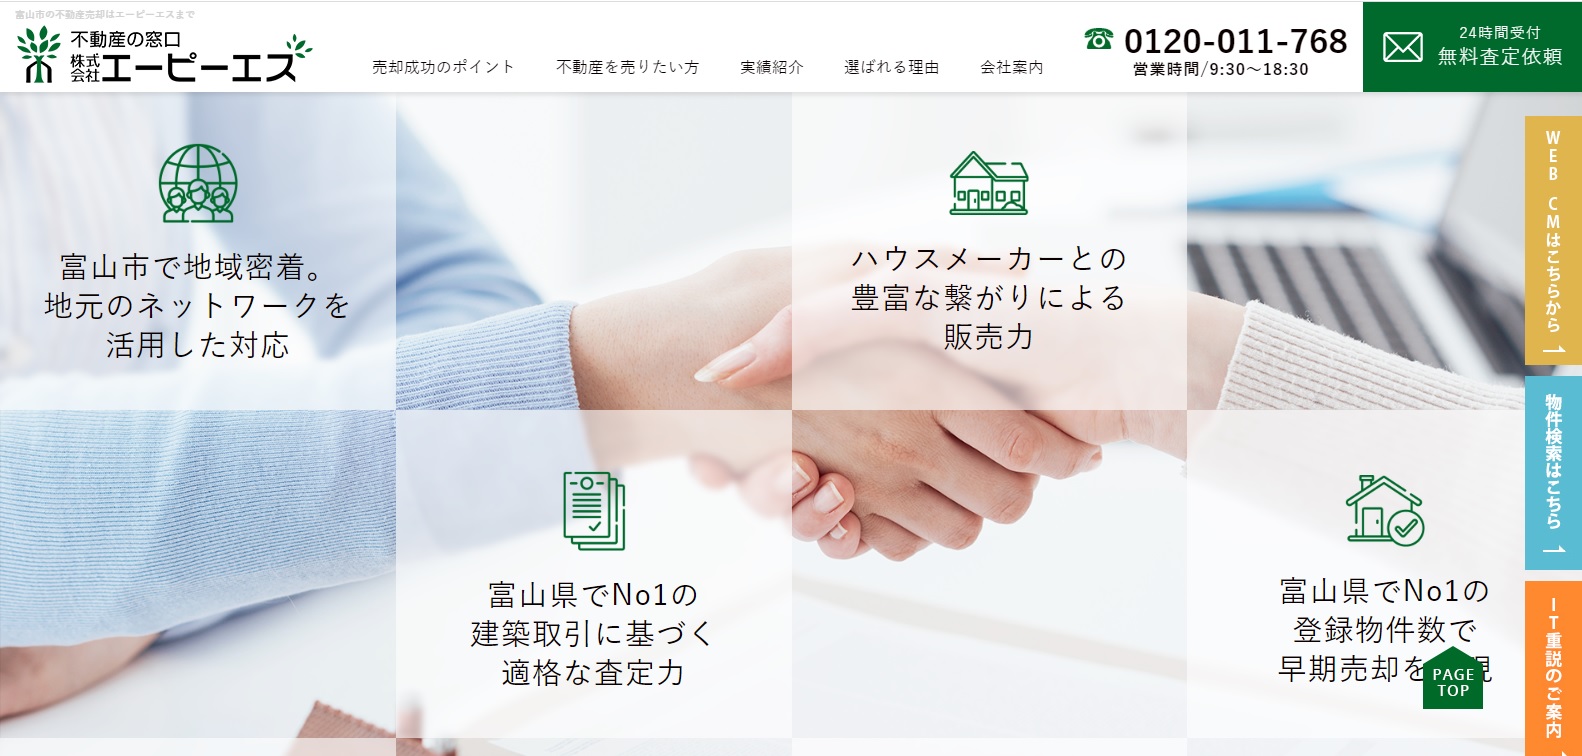 株式会社エーピーエスが 富山エリア 不動産会社 顧客満足度 など3項目で第1位を獲得 日本トレンド リサーチ 不動産会社についての調査 株式会社nexerのプレスリリース